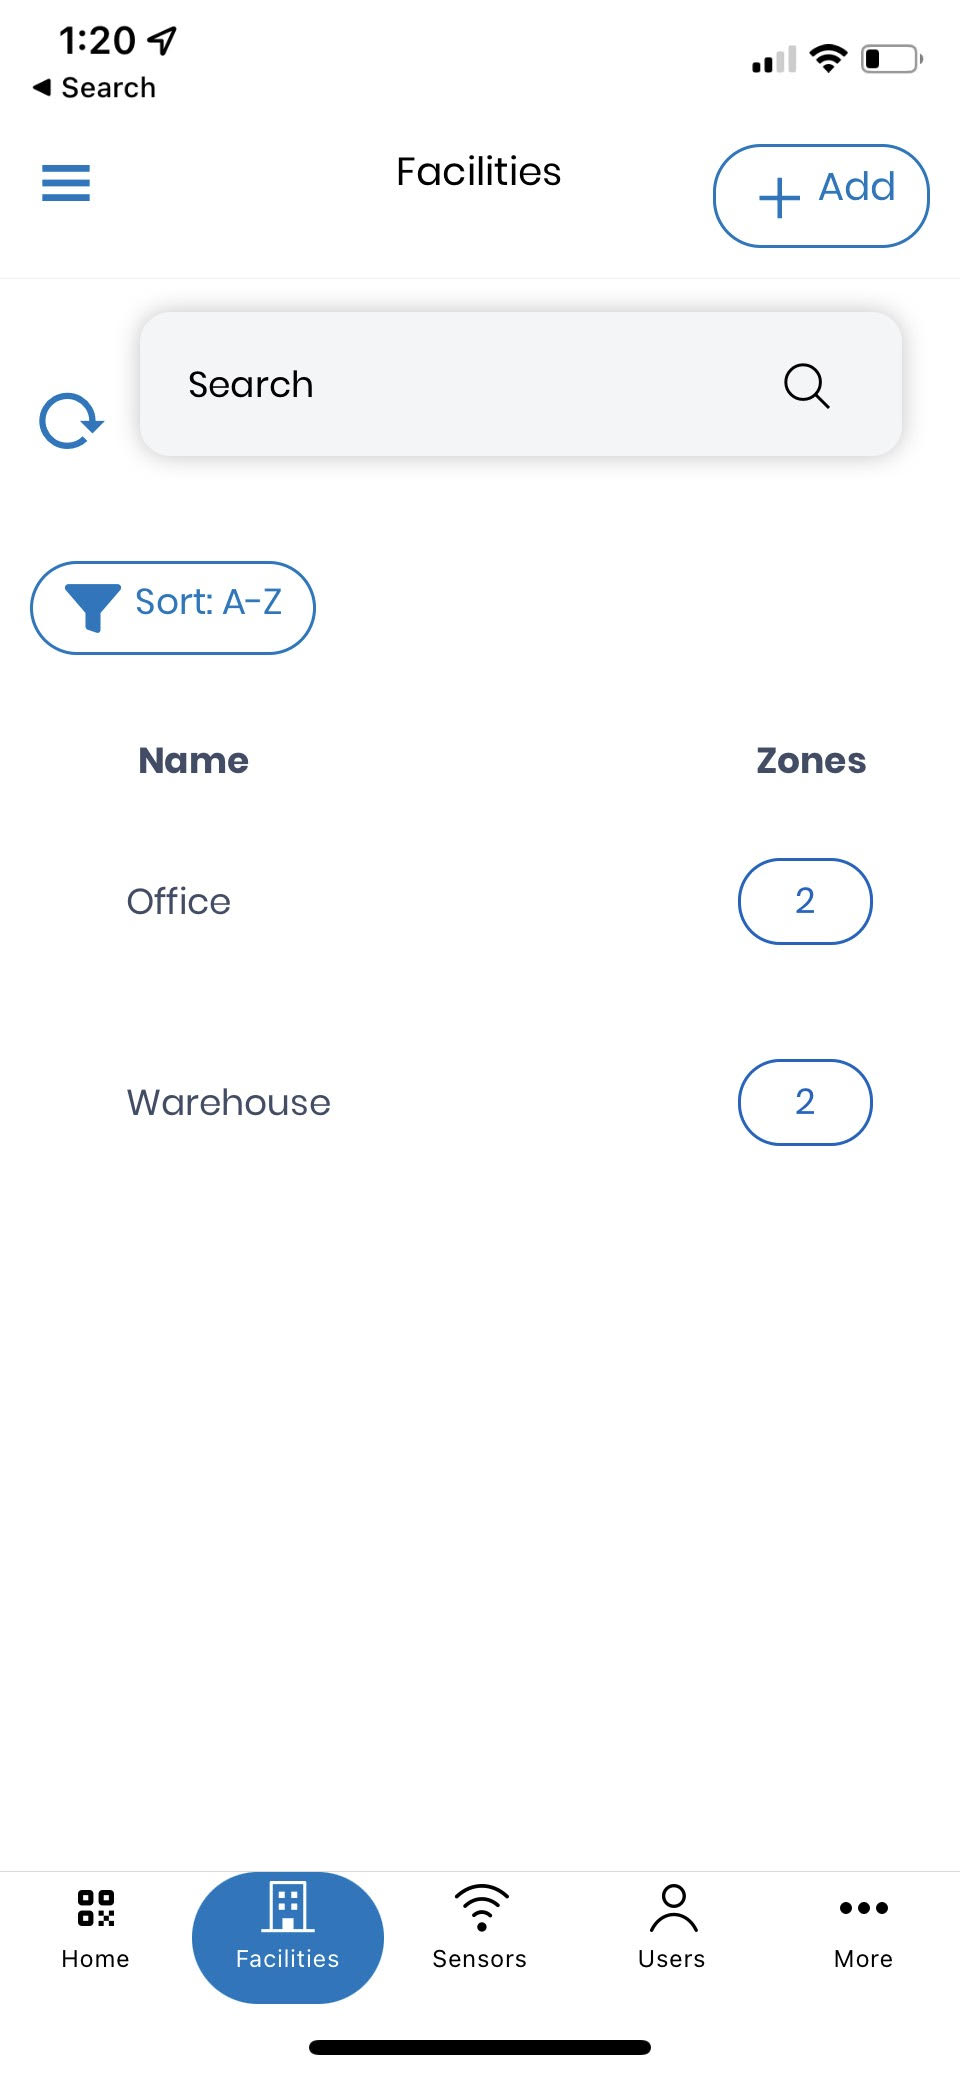 IOS Screenshot - Facilities Tab